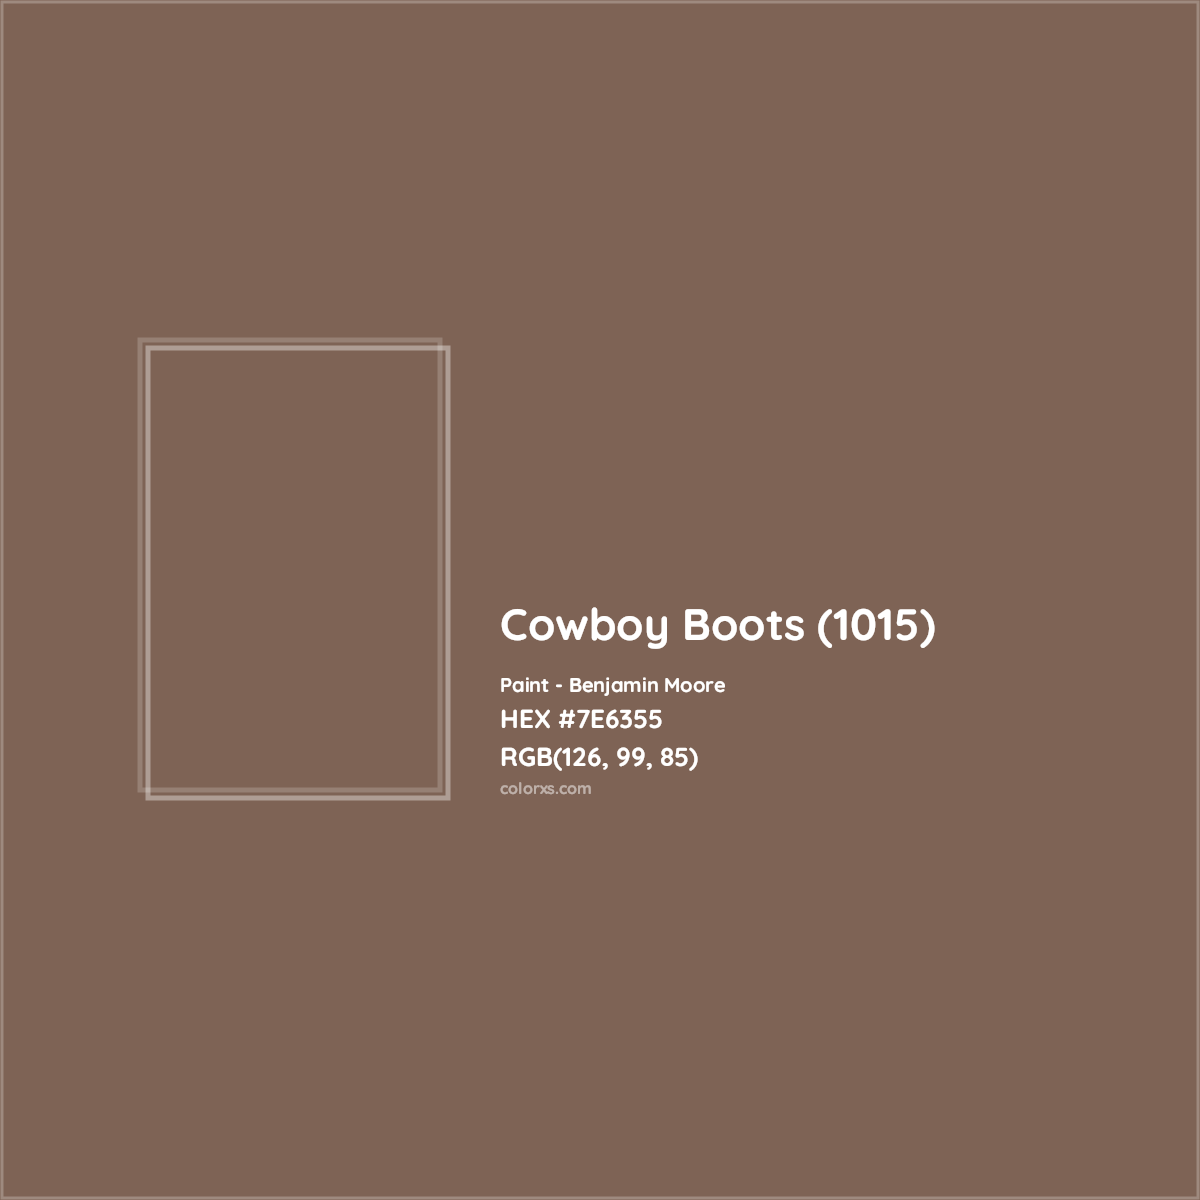 HEX #7E6355 Cowboy Boots (1015) Paint Benjamin Moore - Color Code